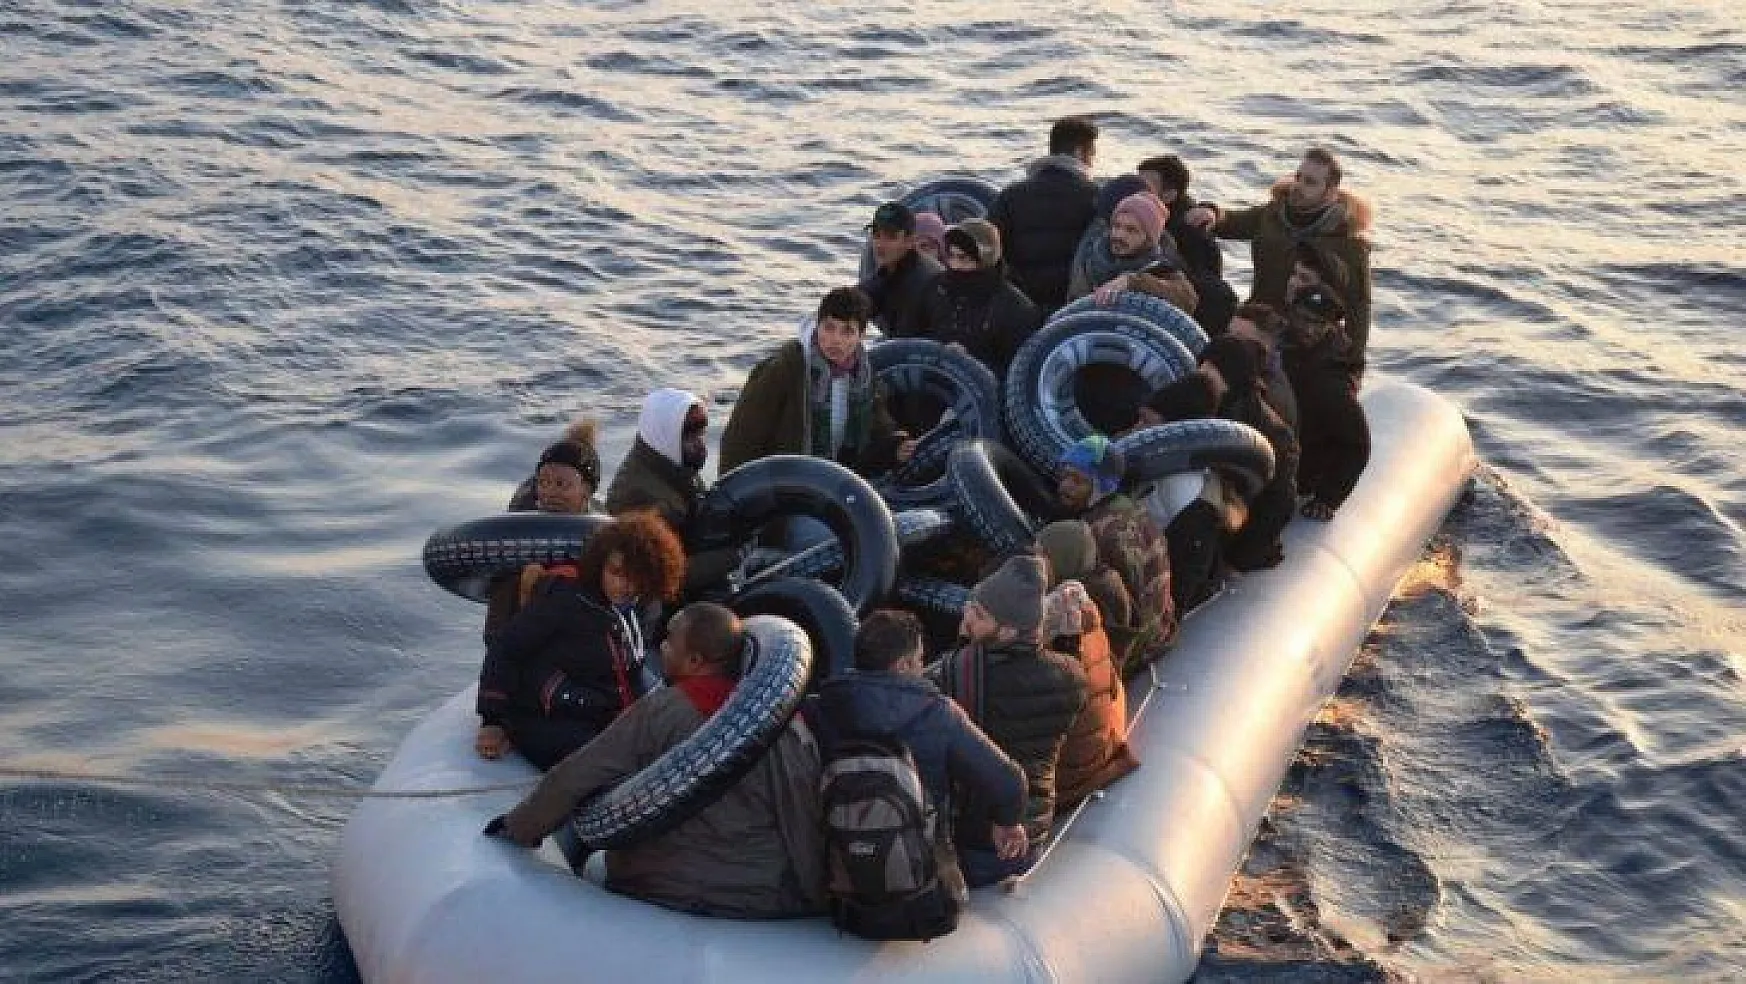 Yunan askerleri mültecileri ölüme terk etti